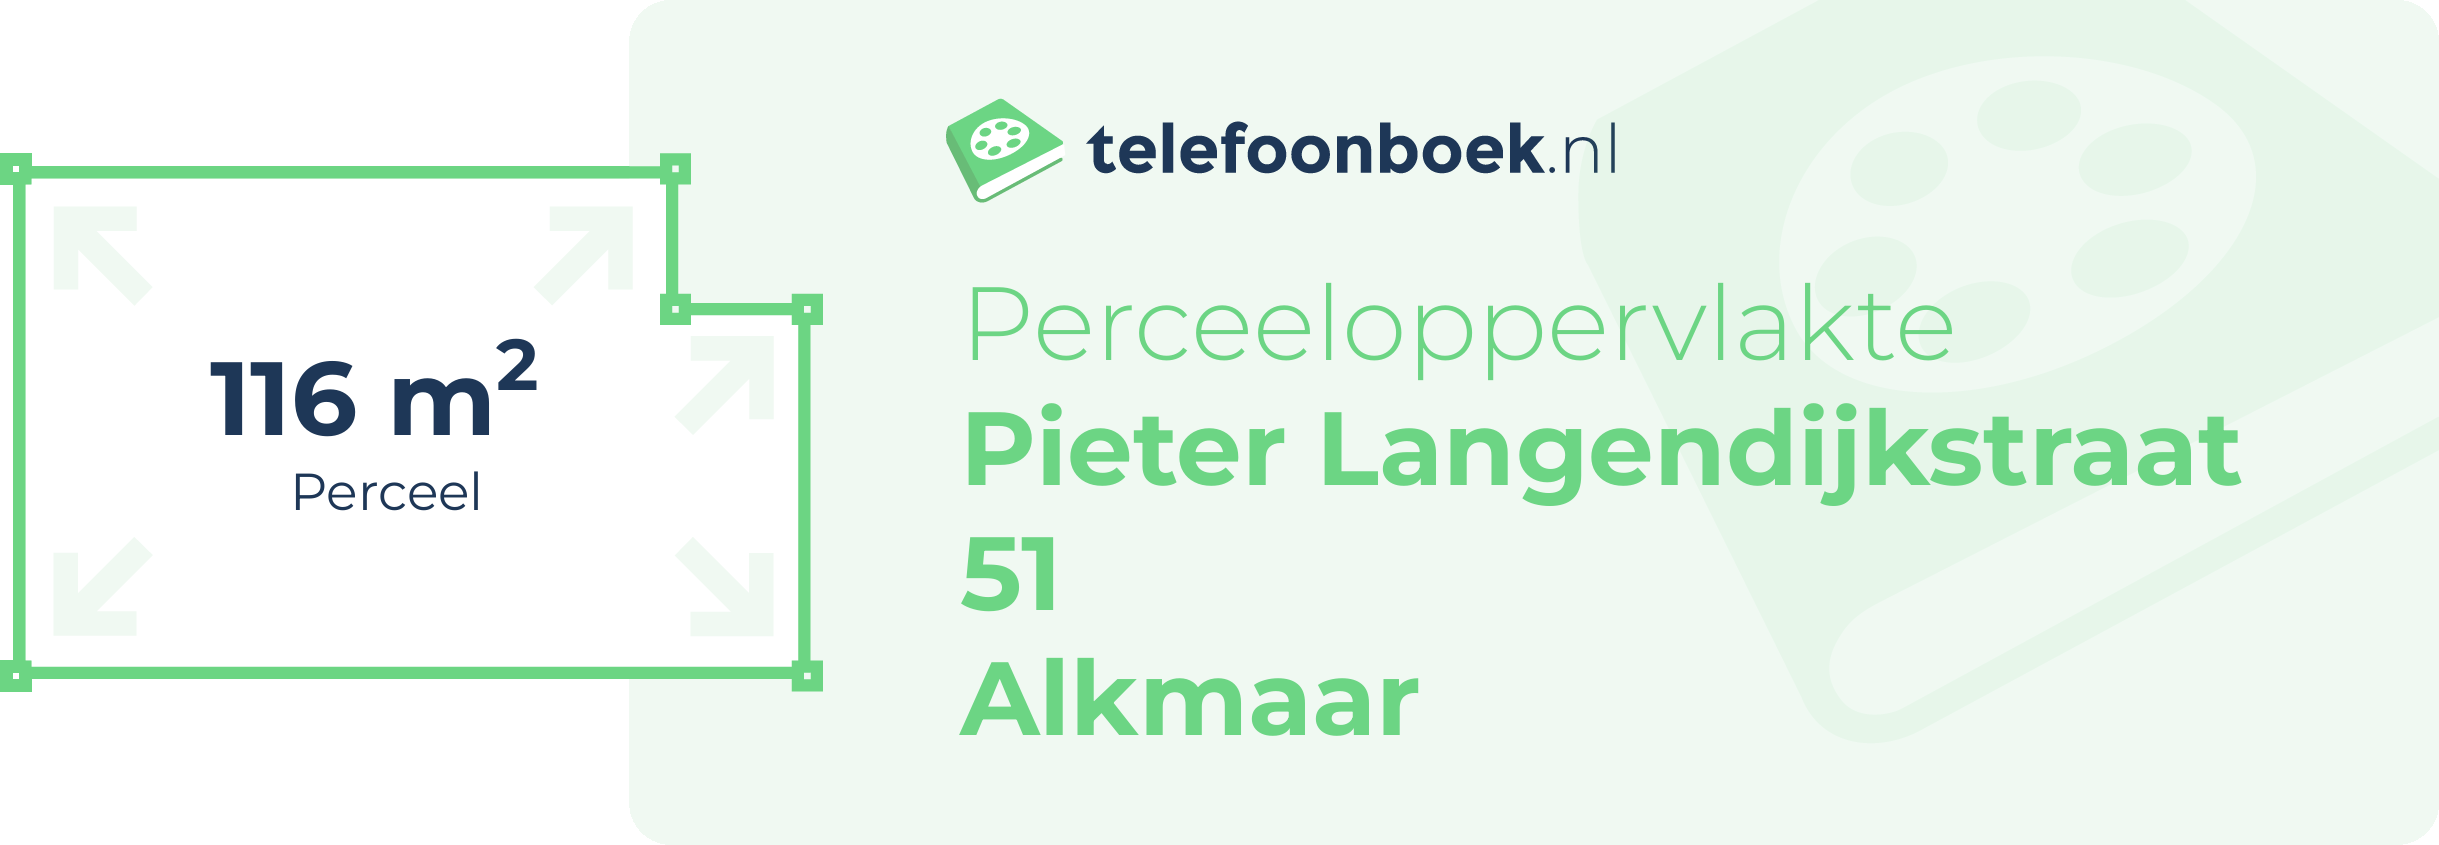 Perceeloppervlakte Pieter Langendijkstraat 51 Alkmaar